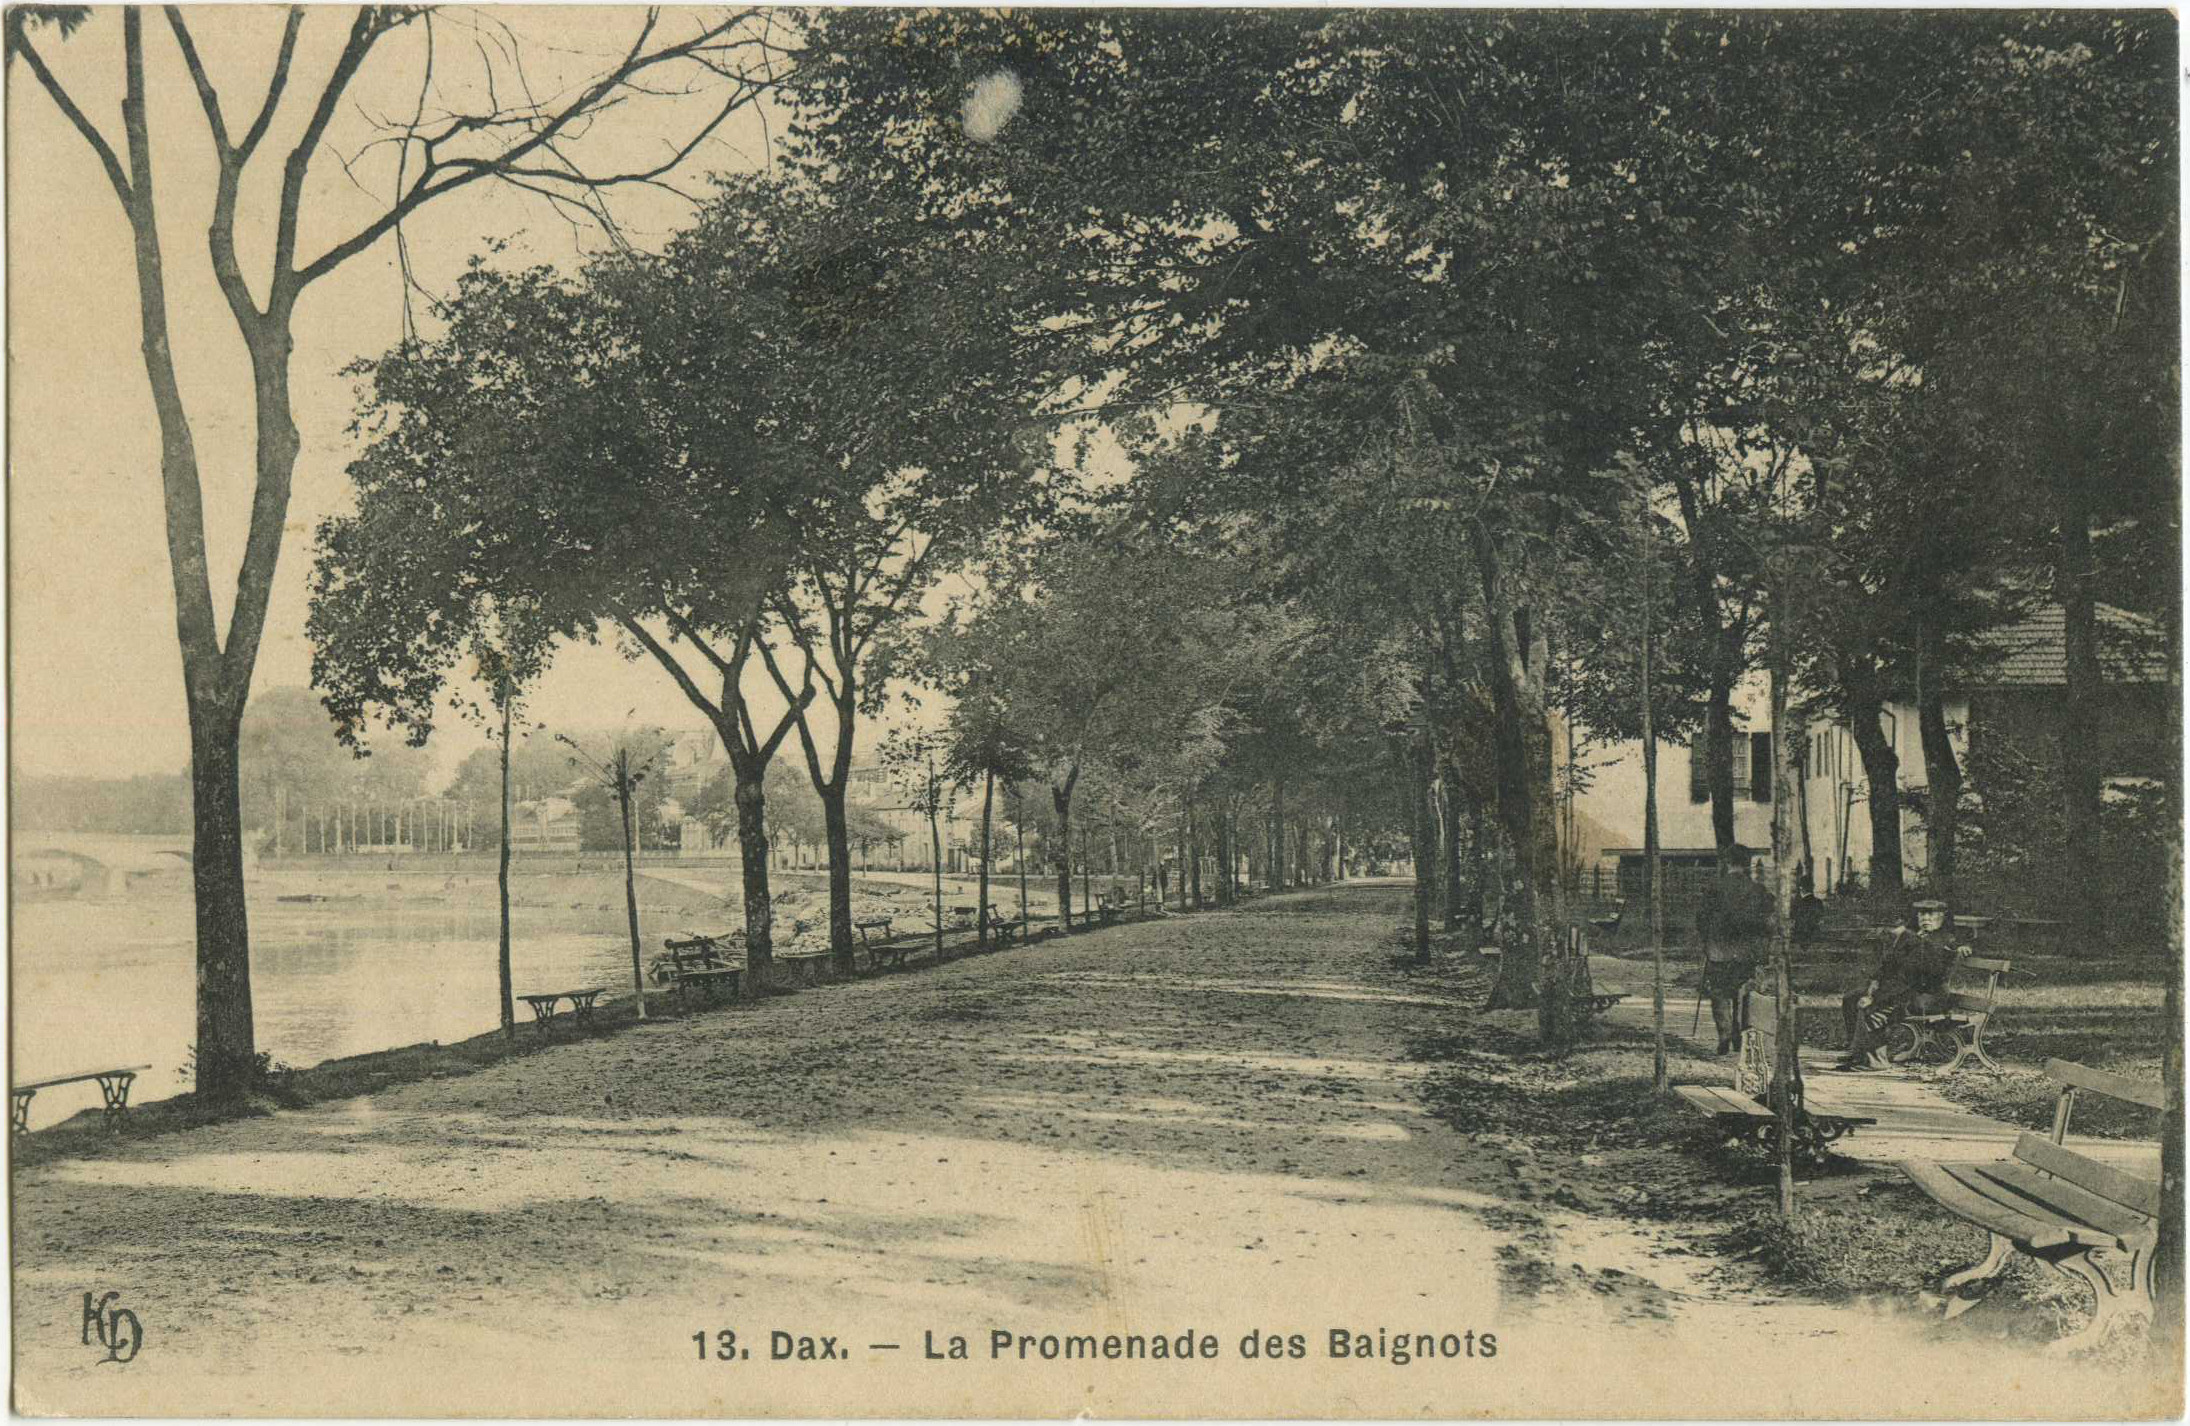 Dax - La Promenade des Baignots